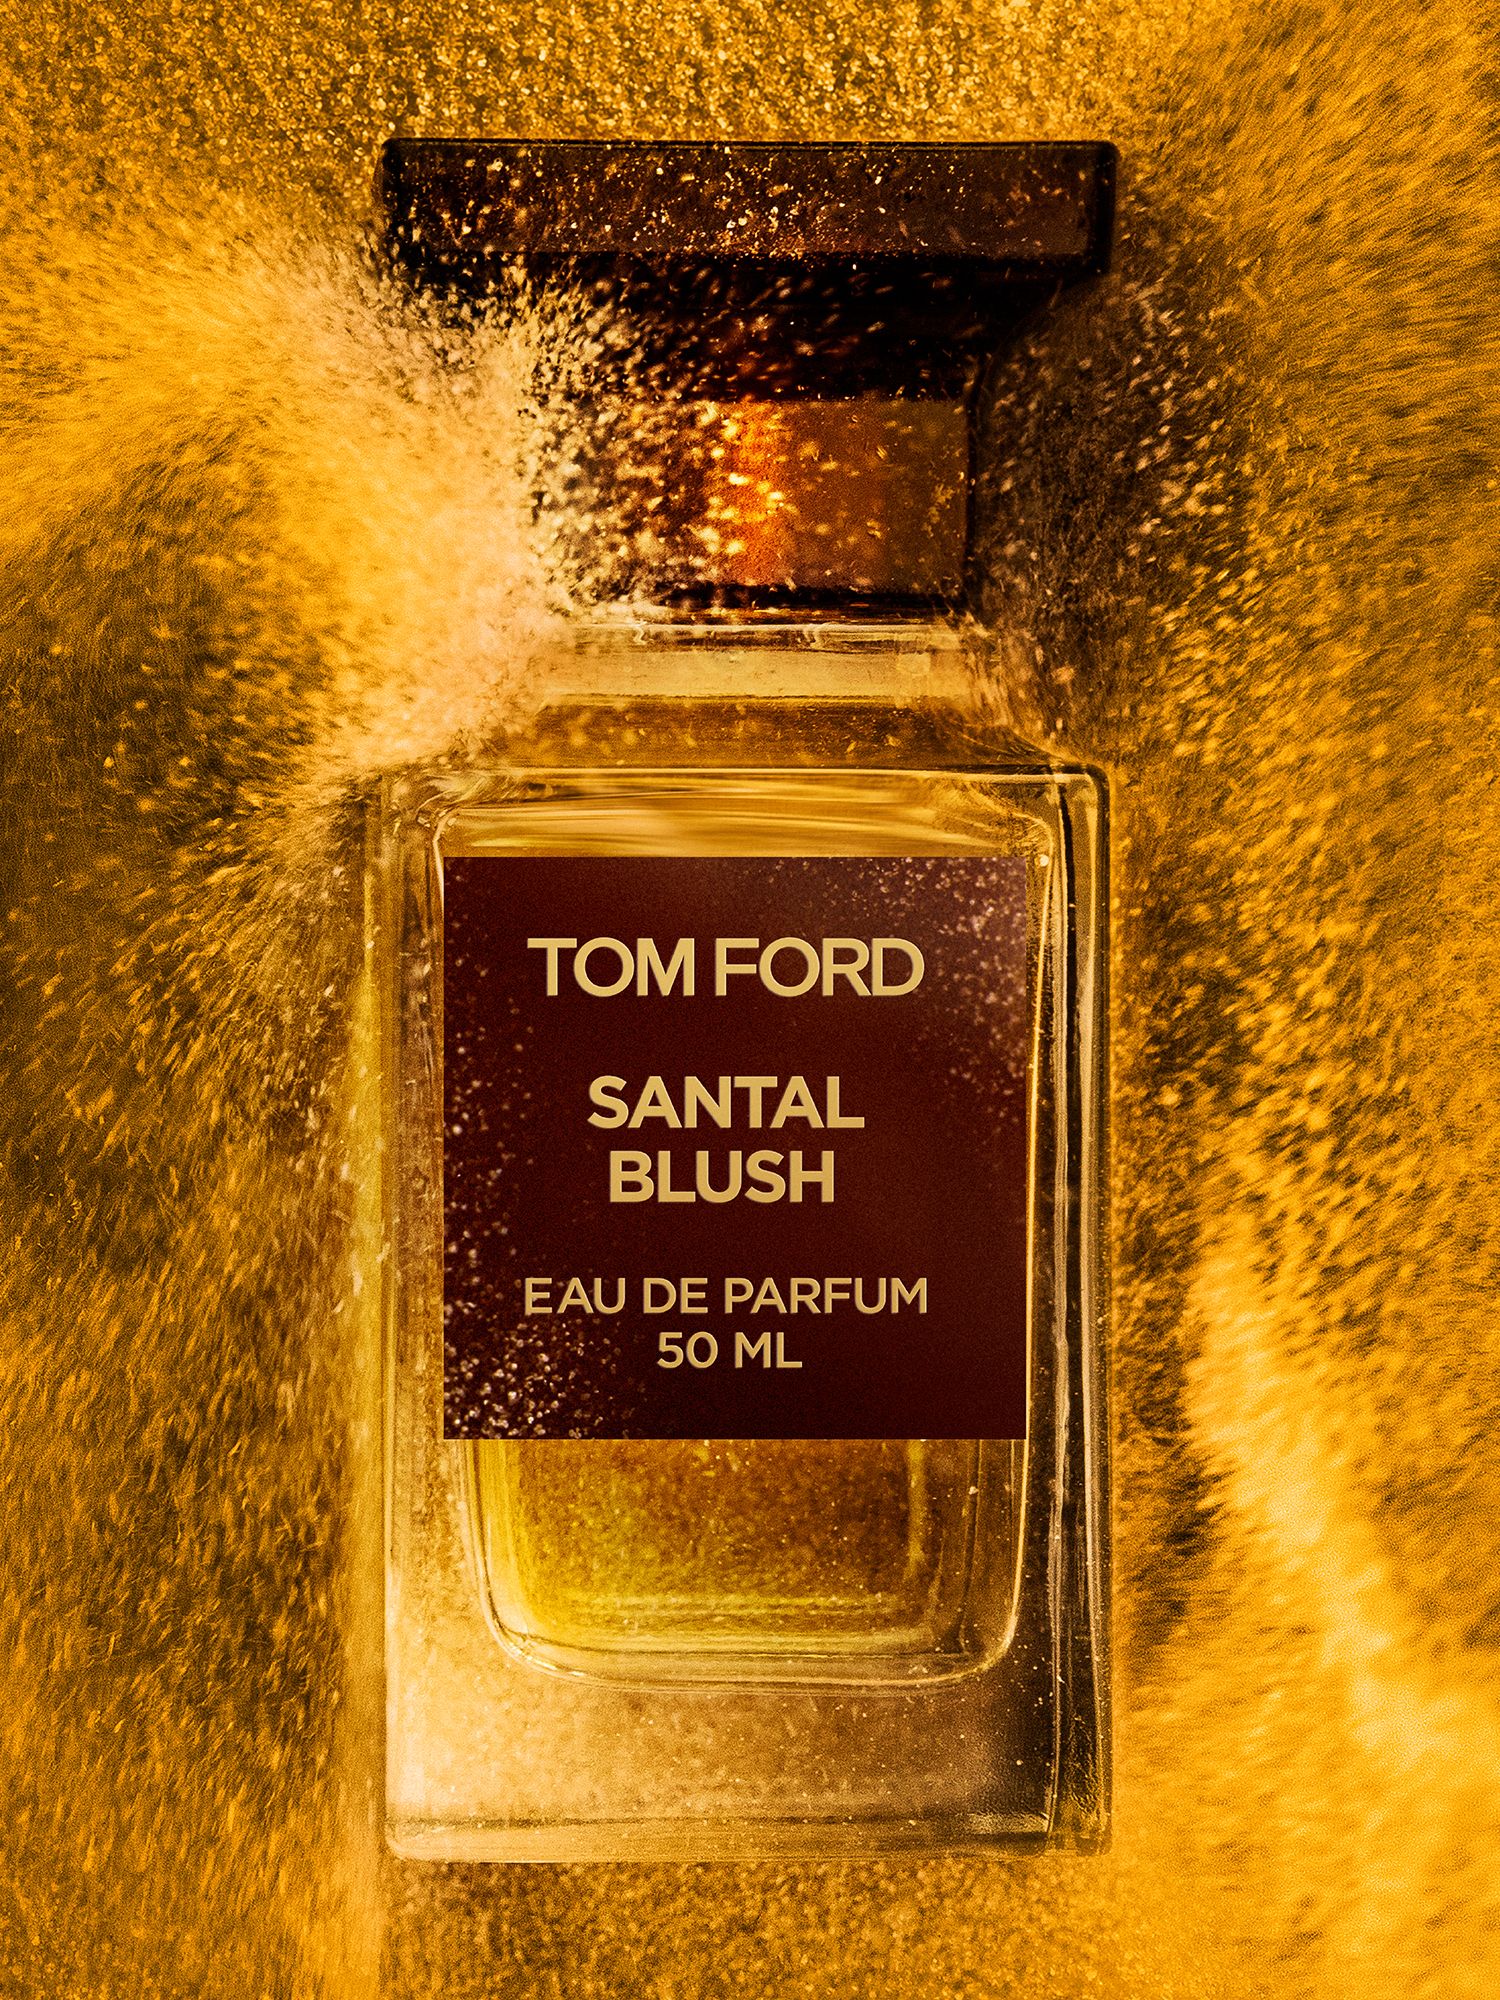 TOM FORD Private Blend Santal Blush Eau de Parfum, 50ml 2